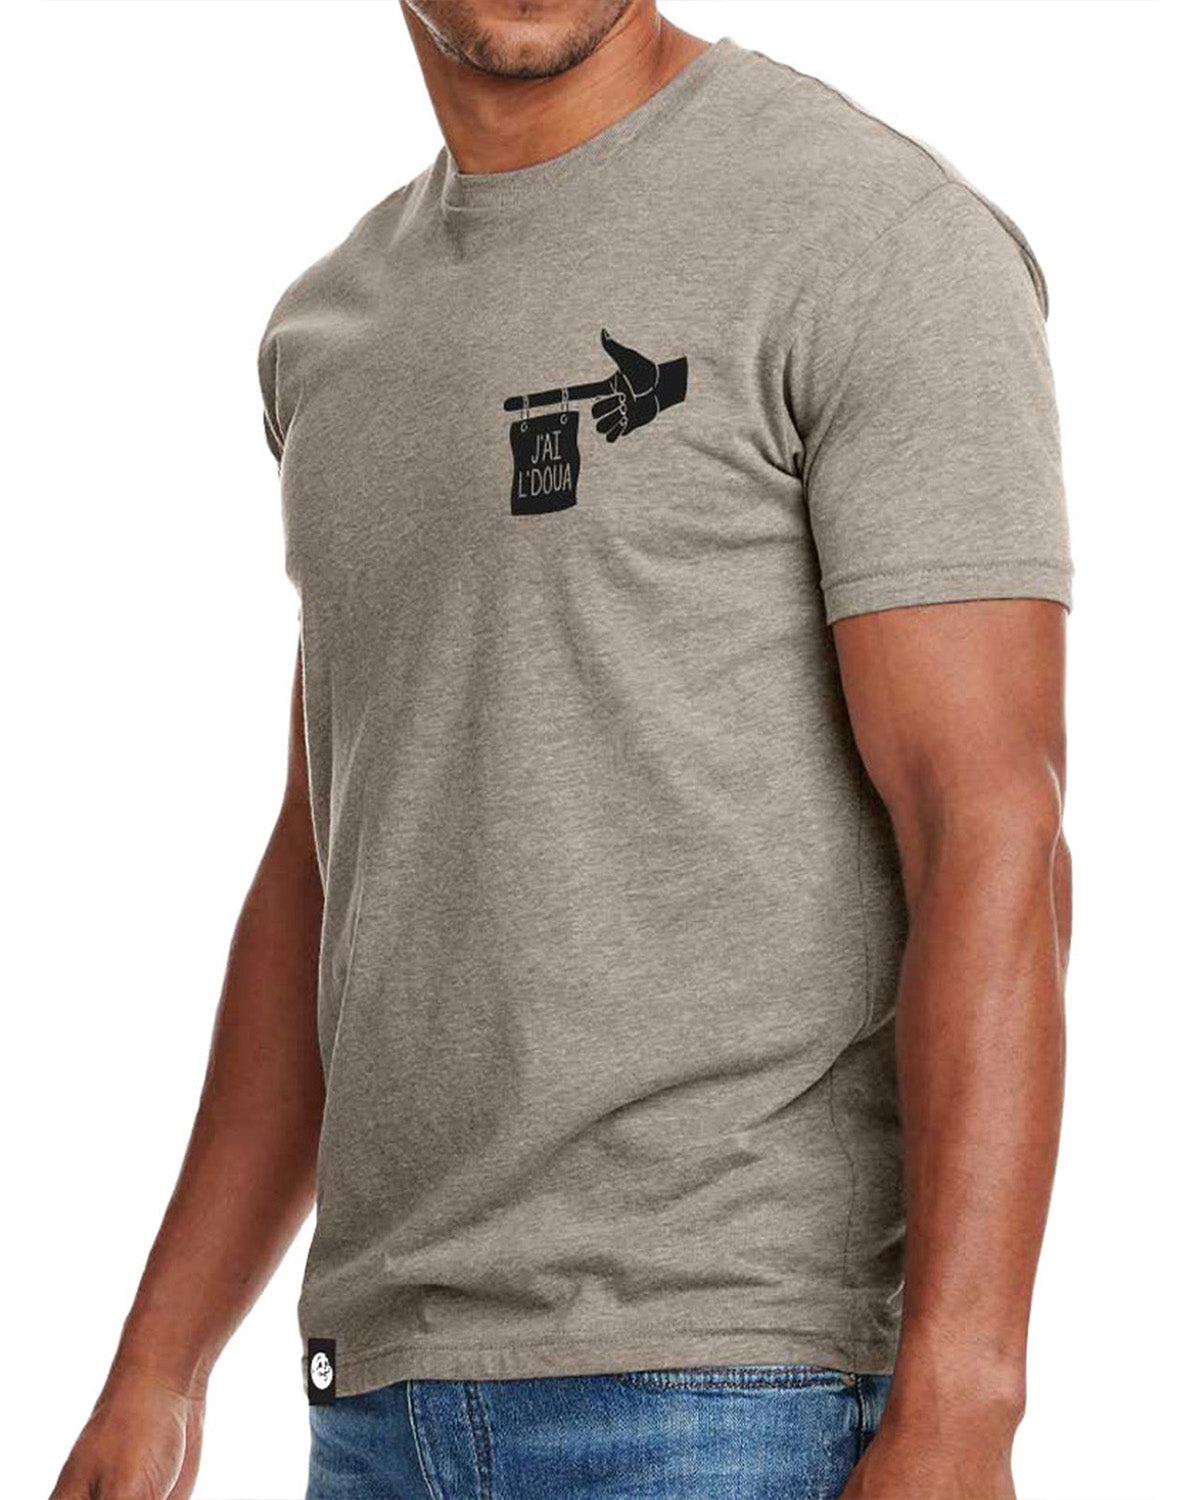 Phoque Apparel - T-shirt : Grey "J'ai l'doua"